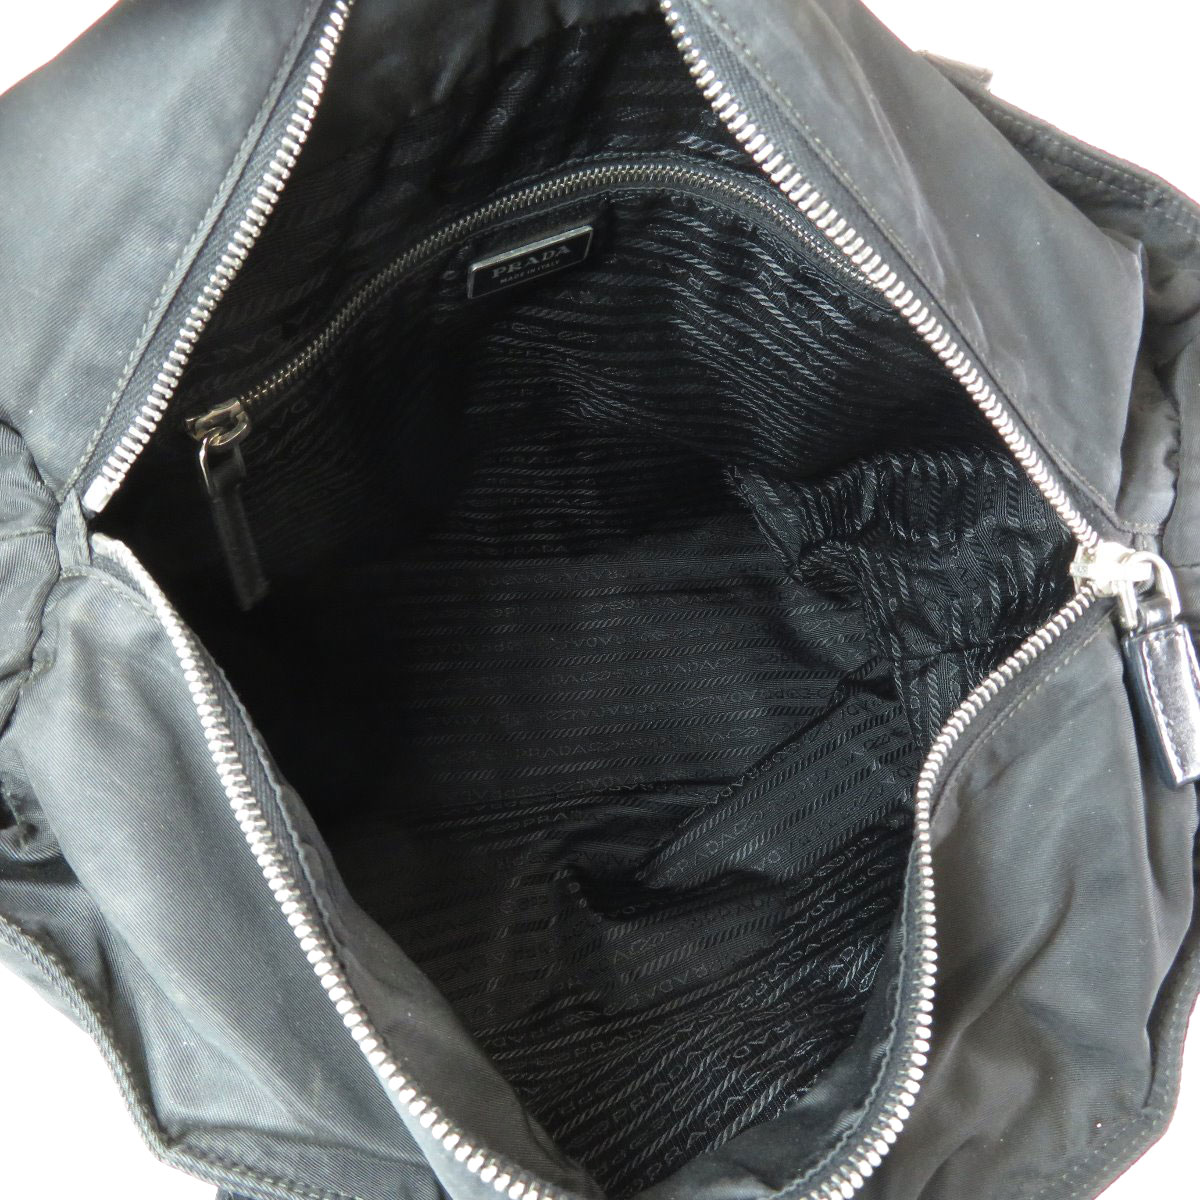 Sale PRADA Tote Bag with logo Nylon | eBay